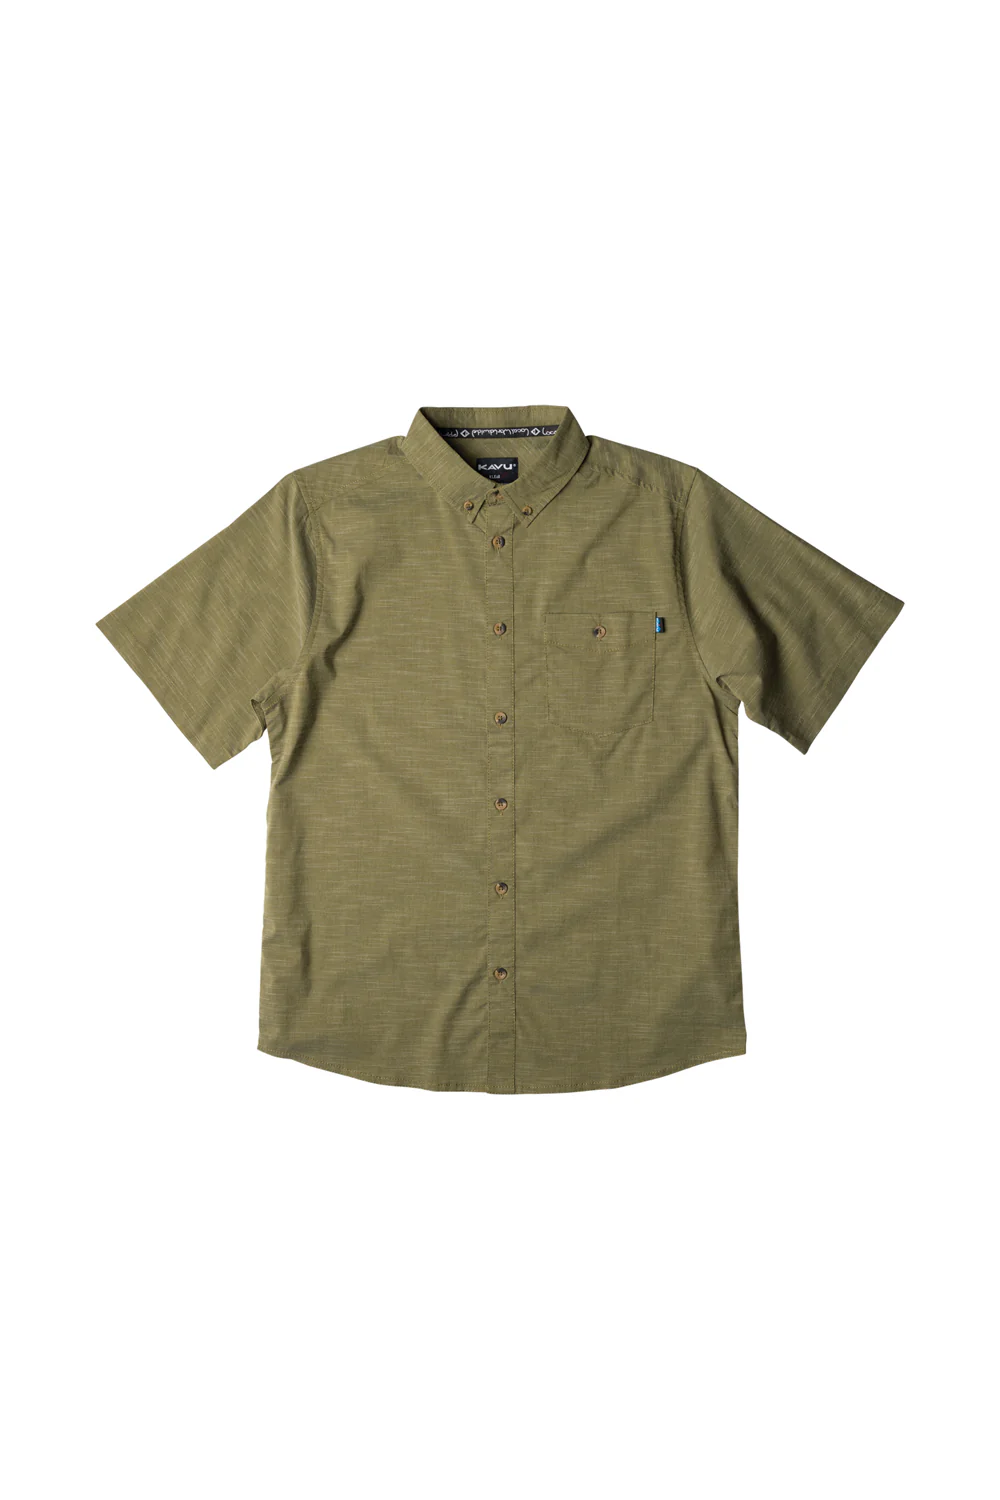 Kavu Welland Shirt - Peat Moss